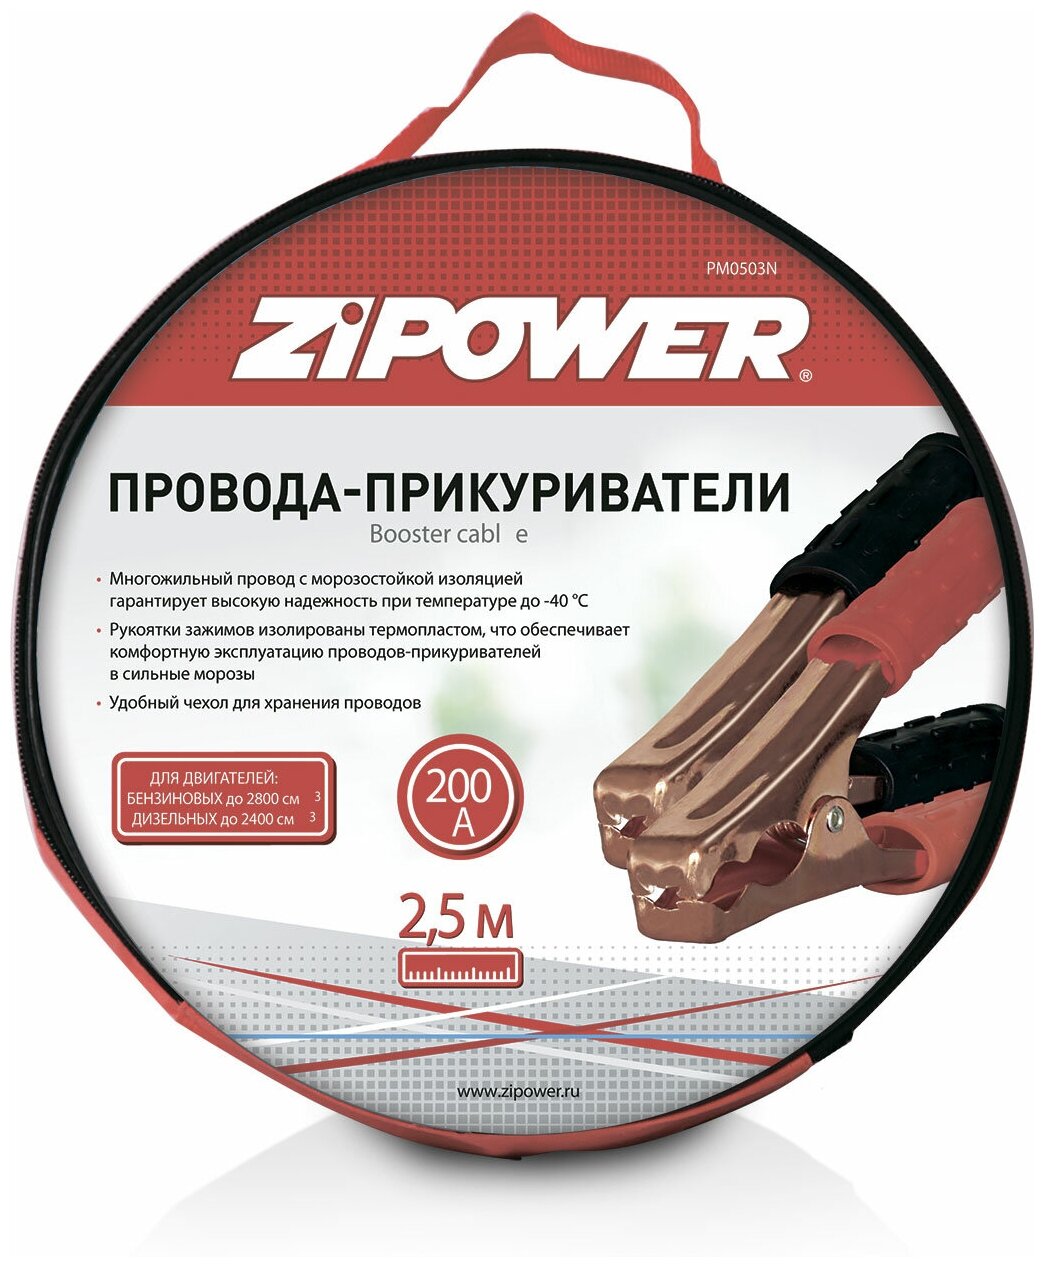 Провода Для Прикуривания 200A (2 М) "Zipower" (Морозостойкие) ZiPOWER арт. PM0503N